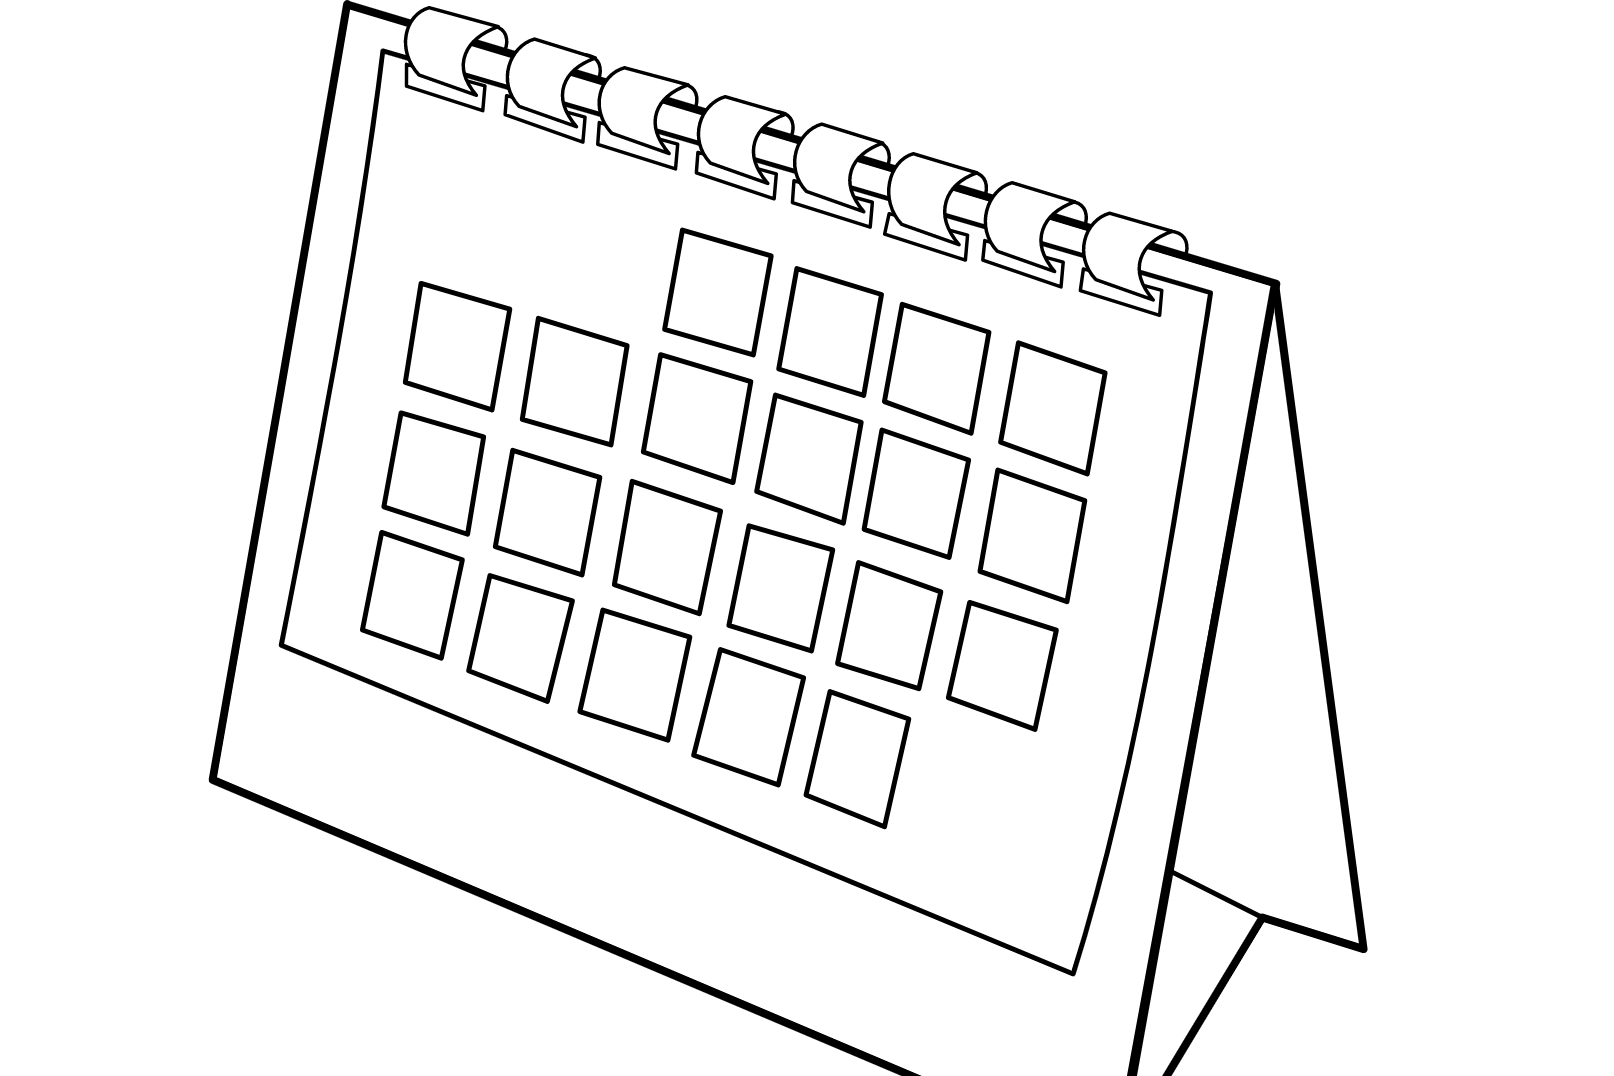 district-calendar-fairhaven-public-schools